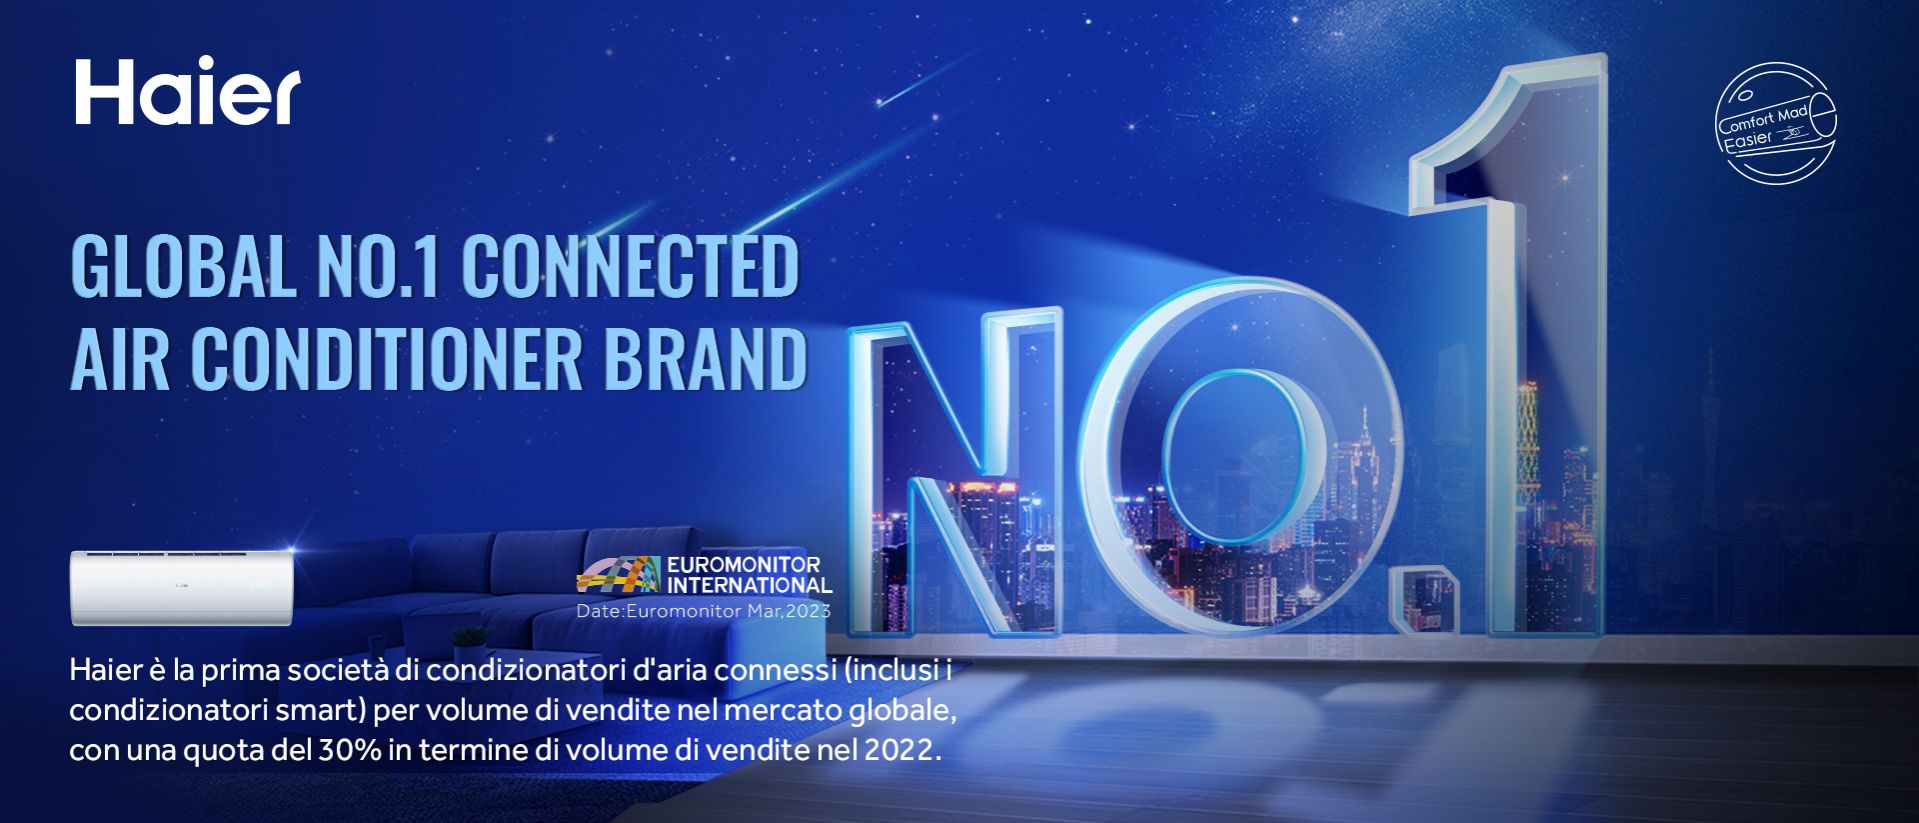 Haier è brand #n1 per Euromonitor! 